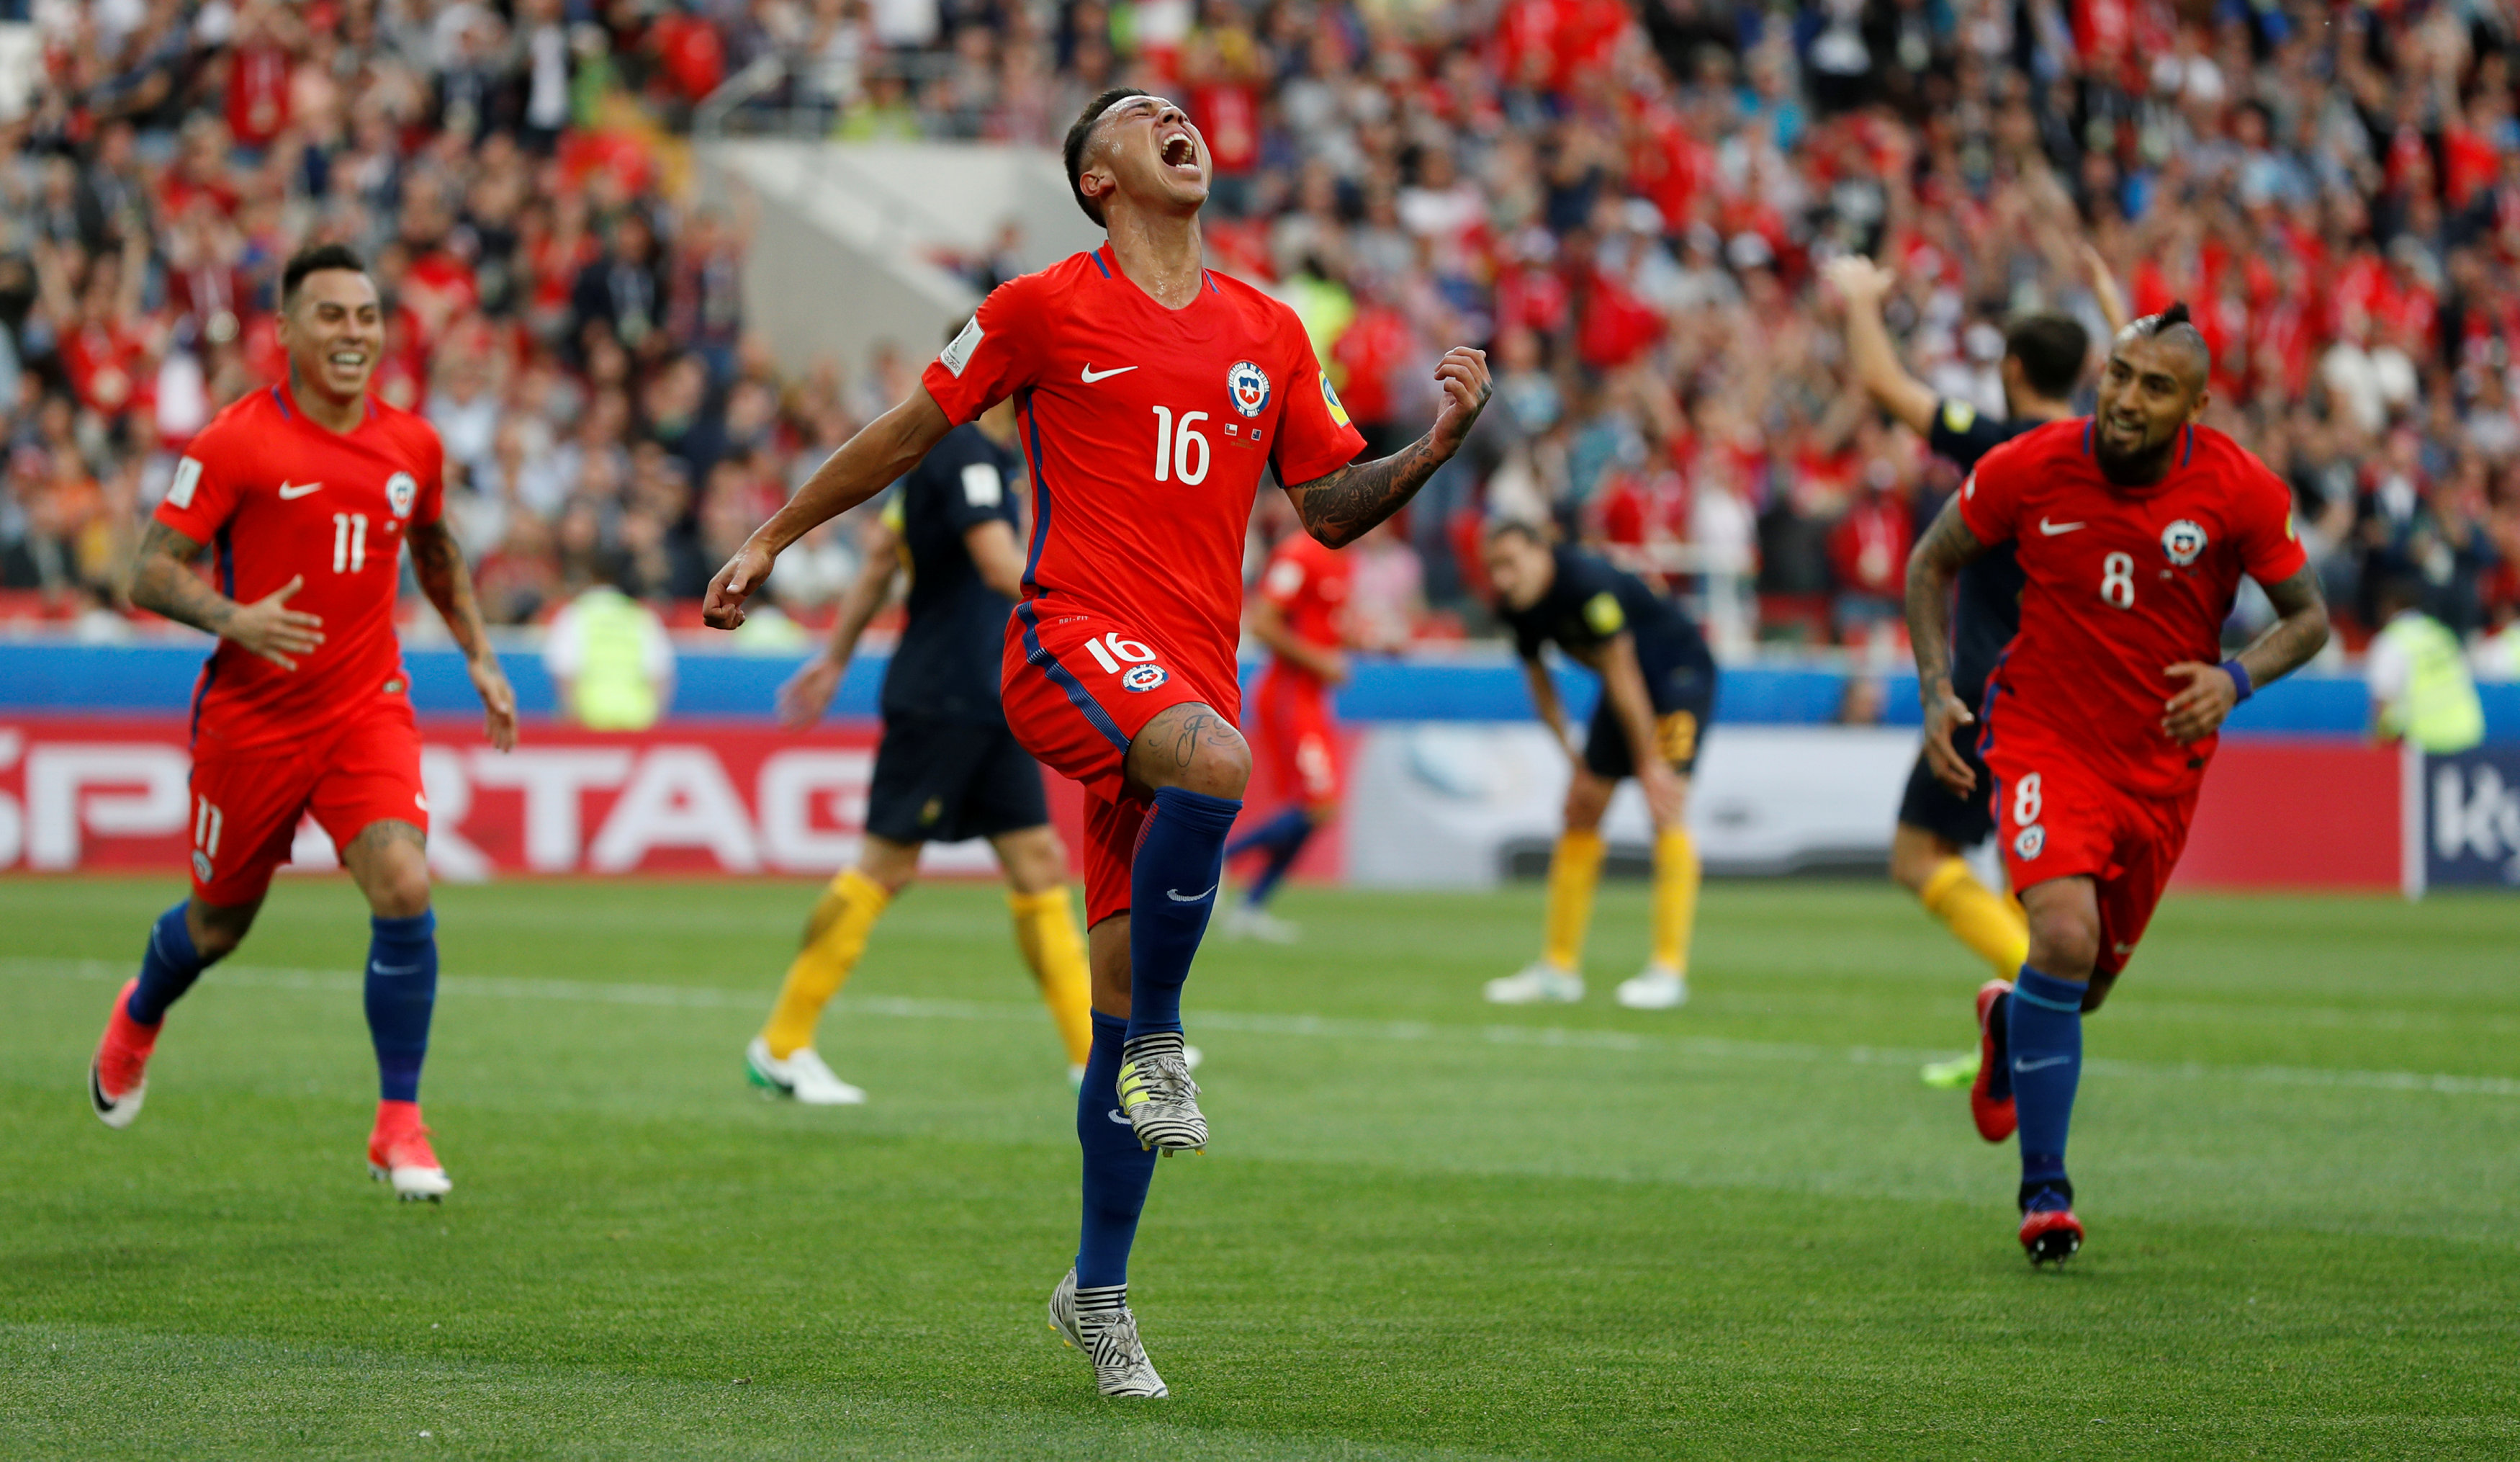 Tras estos resultados, Chile deberá enfrentarse a Portugal y Alemania a México la próxima semana.